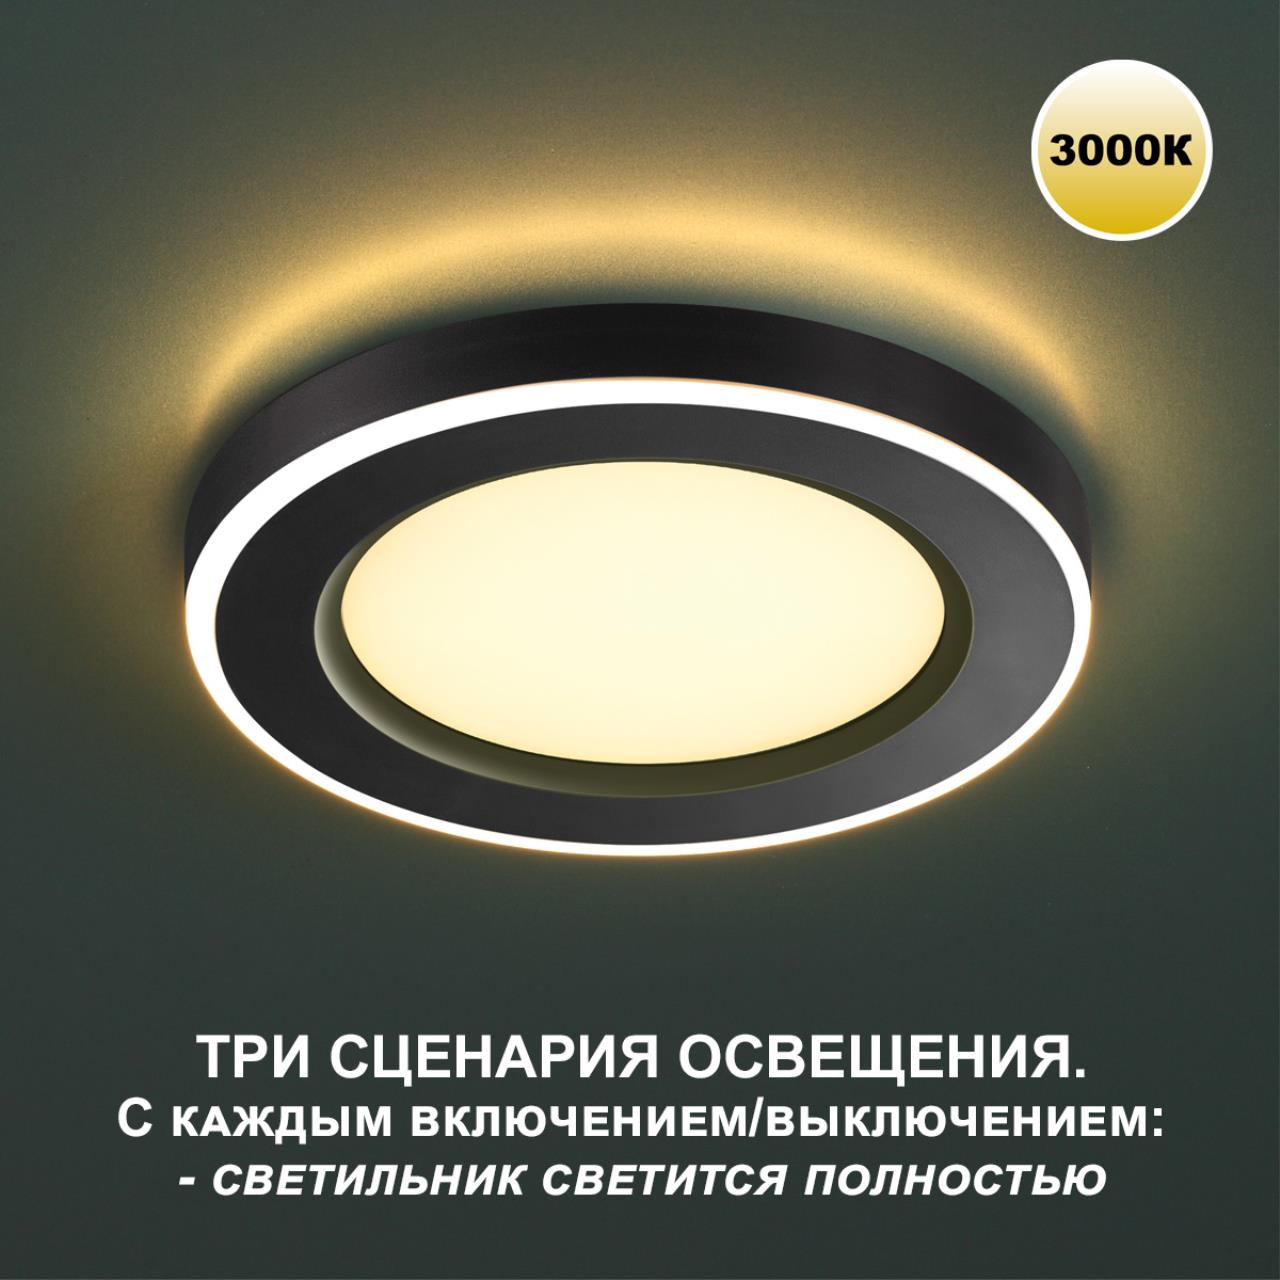 Трёхрежимный встраиваемый светодиодный светильник Novotech SPAN 359021